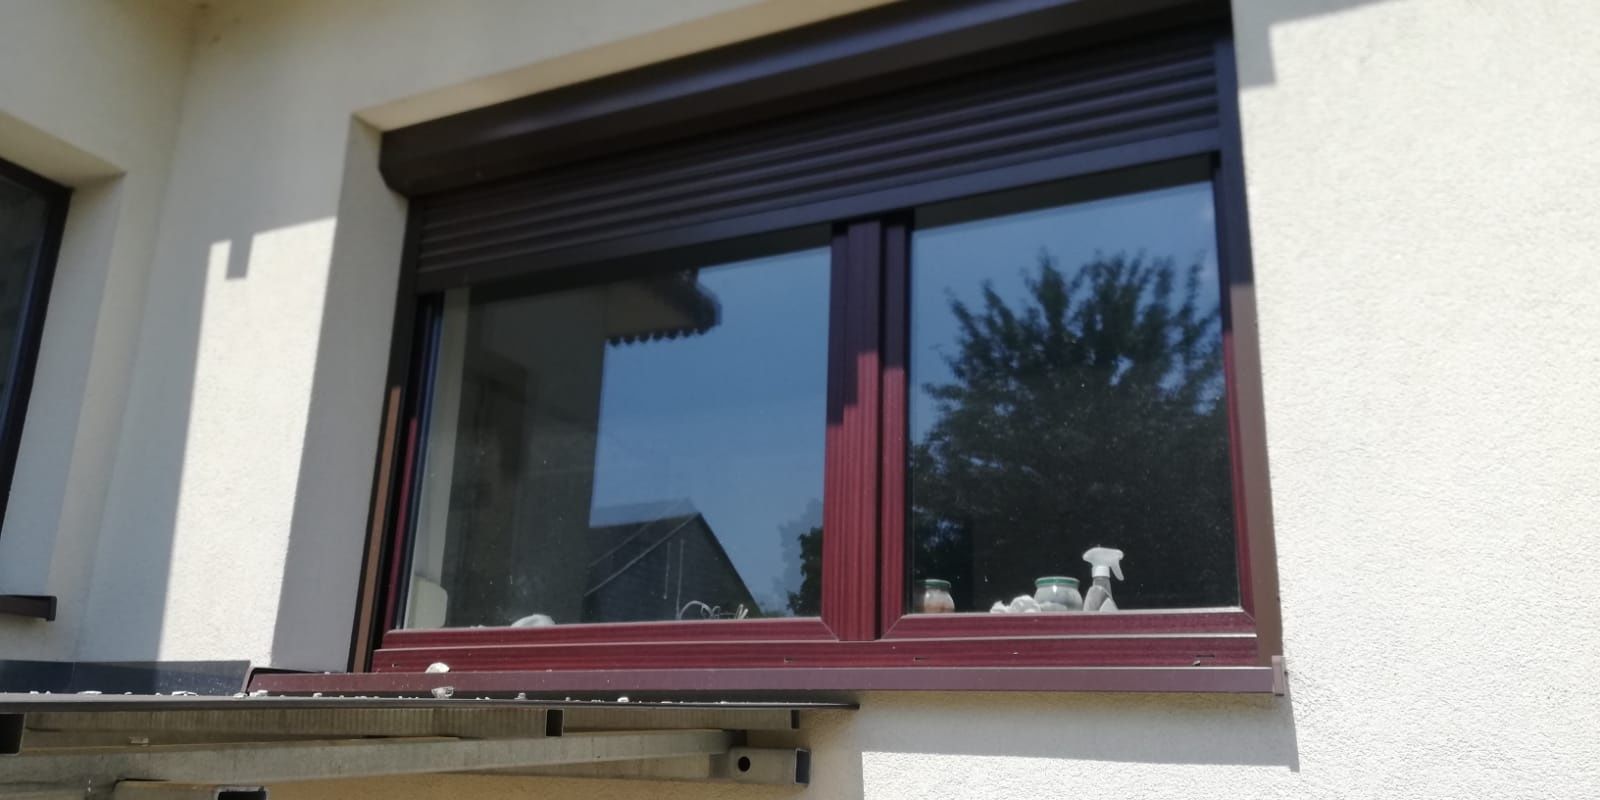 Okno plastikowe brązowe  214x140 brązowe mahoń aluplast